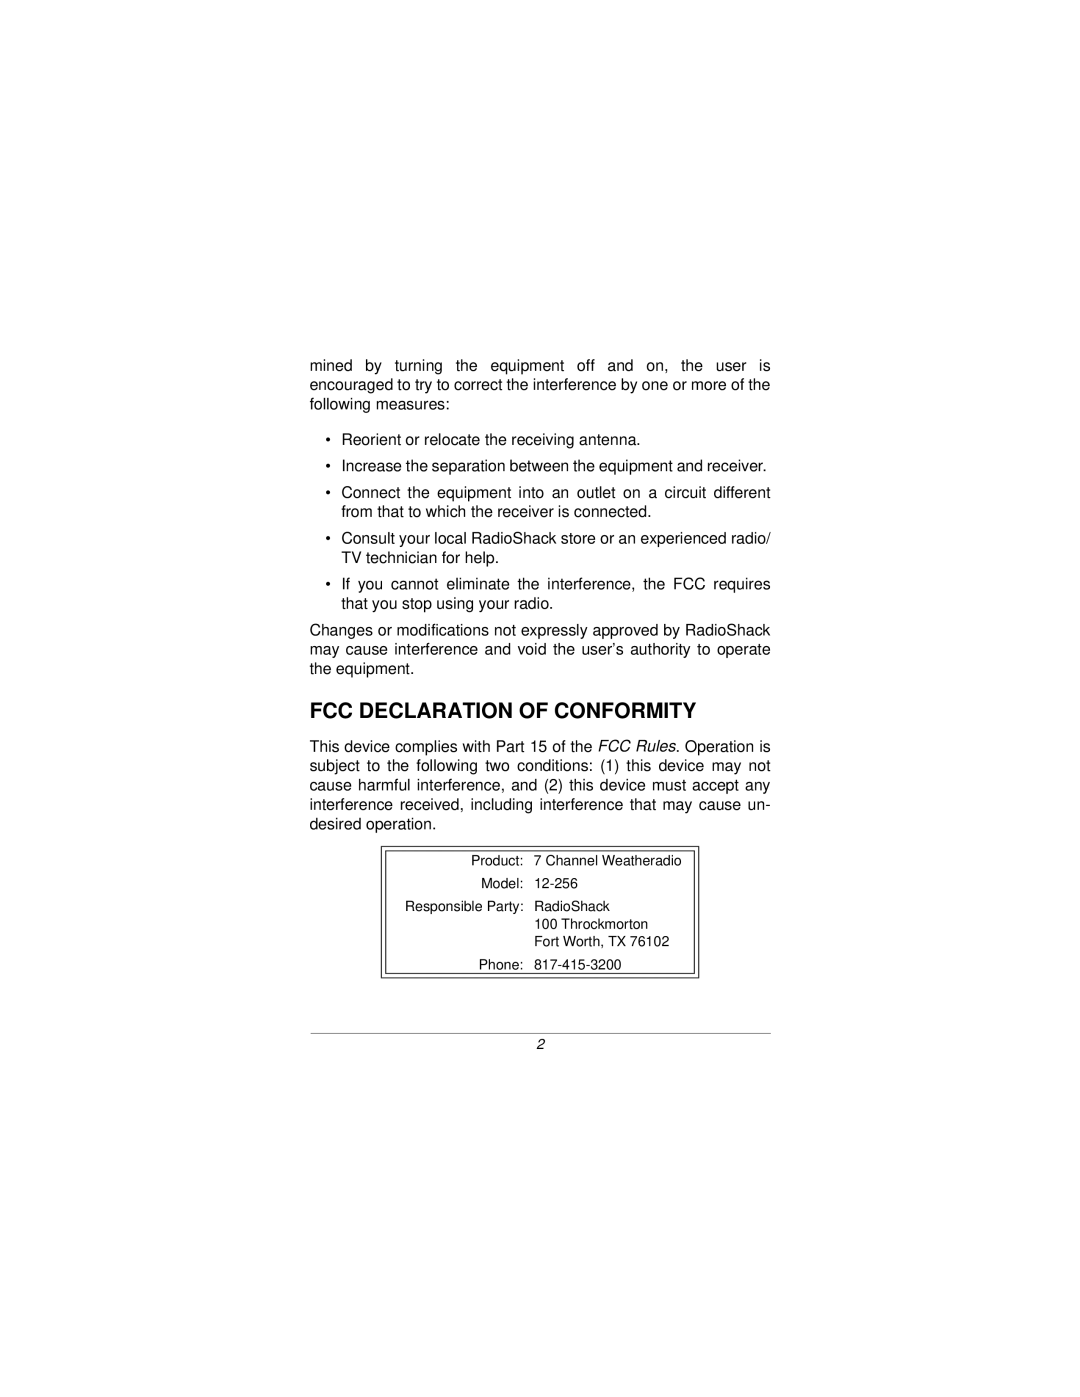 Radio Shack 12-256 specifications Fcc Declaration Of Conformity 